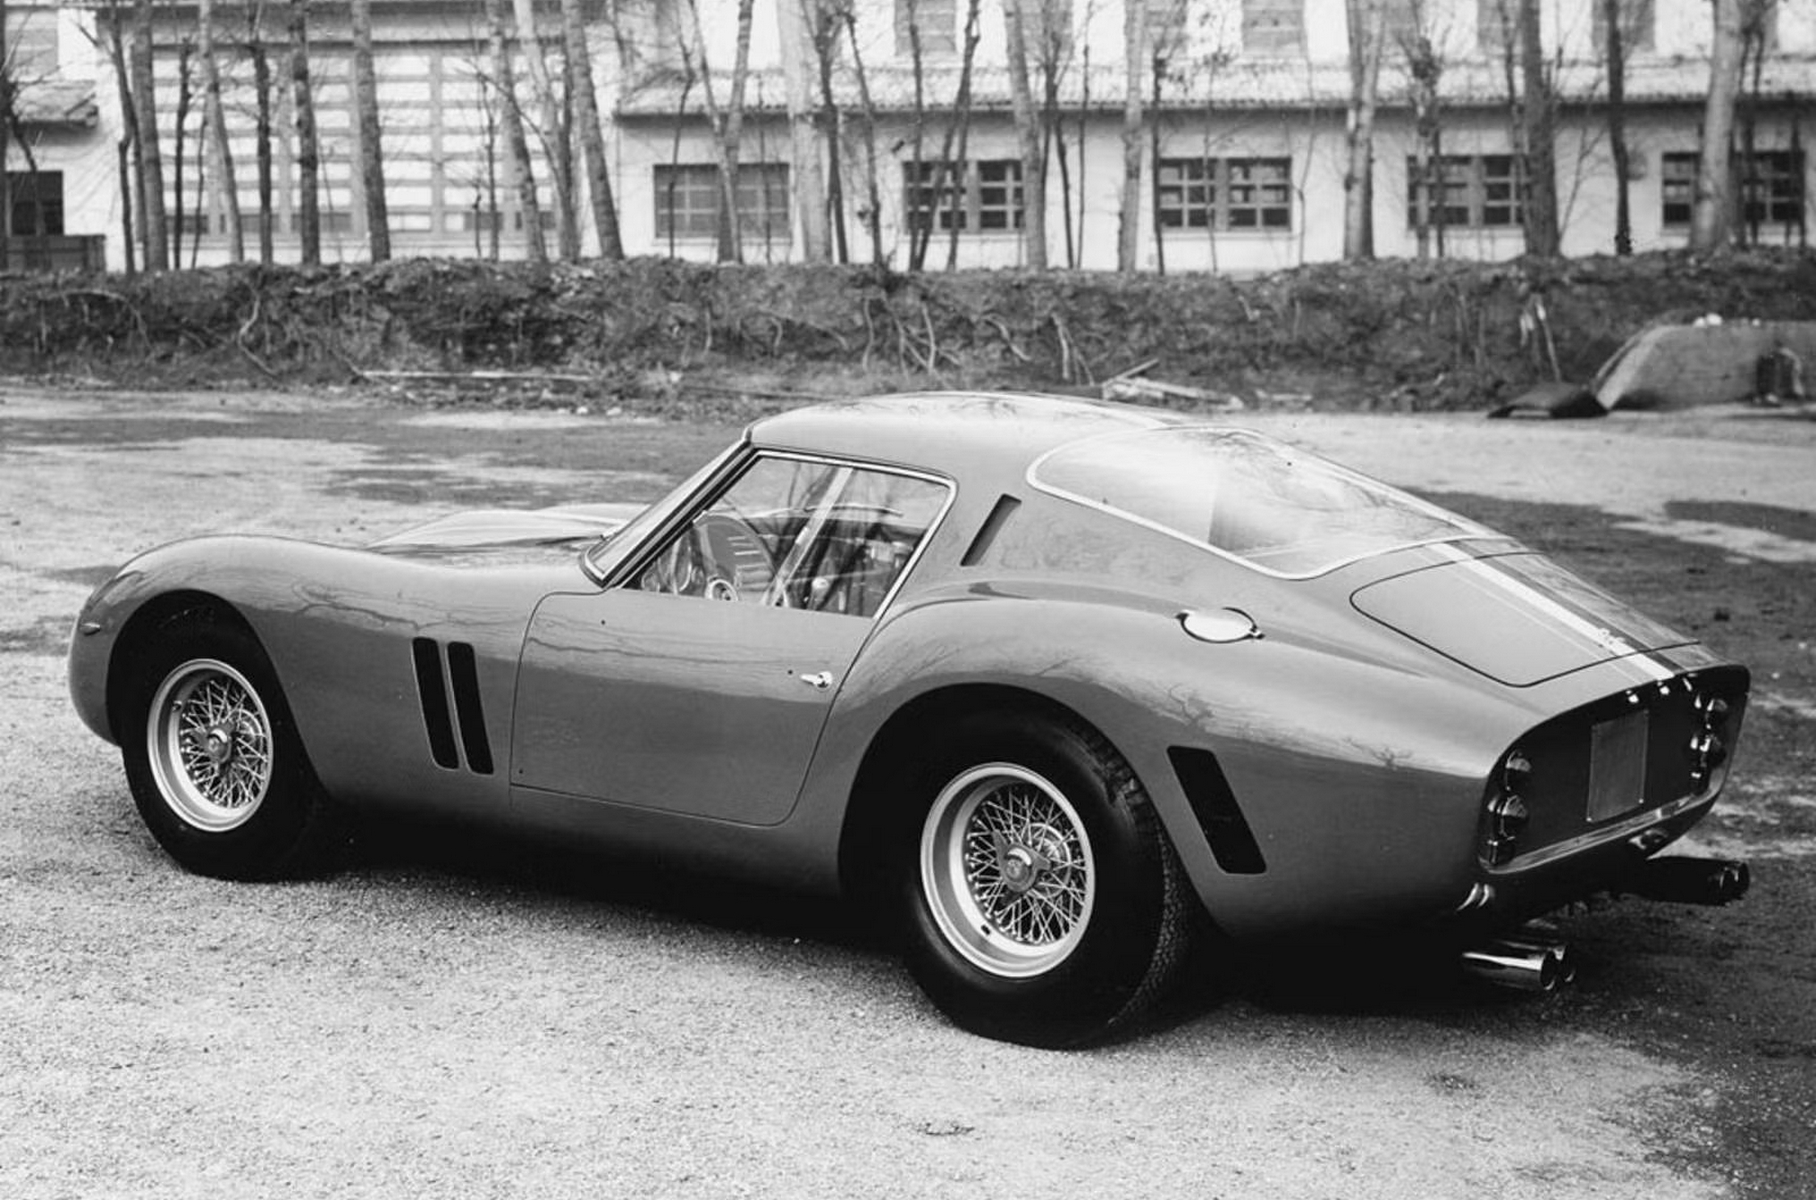 Самый первый экземпляр 250 GTO (шасси 3223GT) во время показа журналистам в феврале 1962 года, во дворе фабрики Ferrari